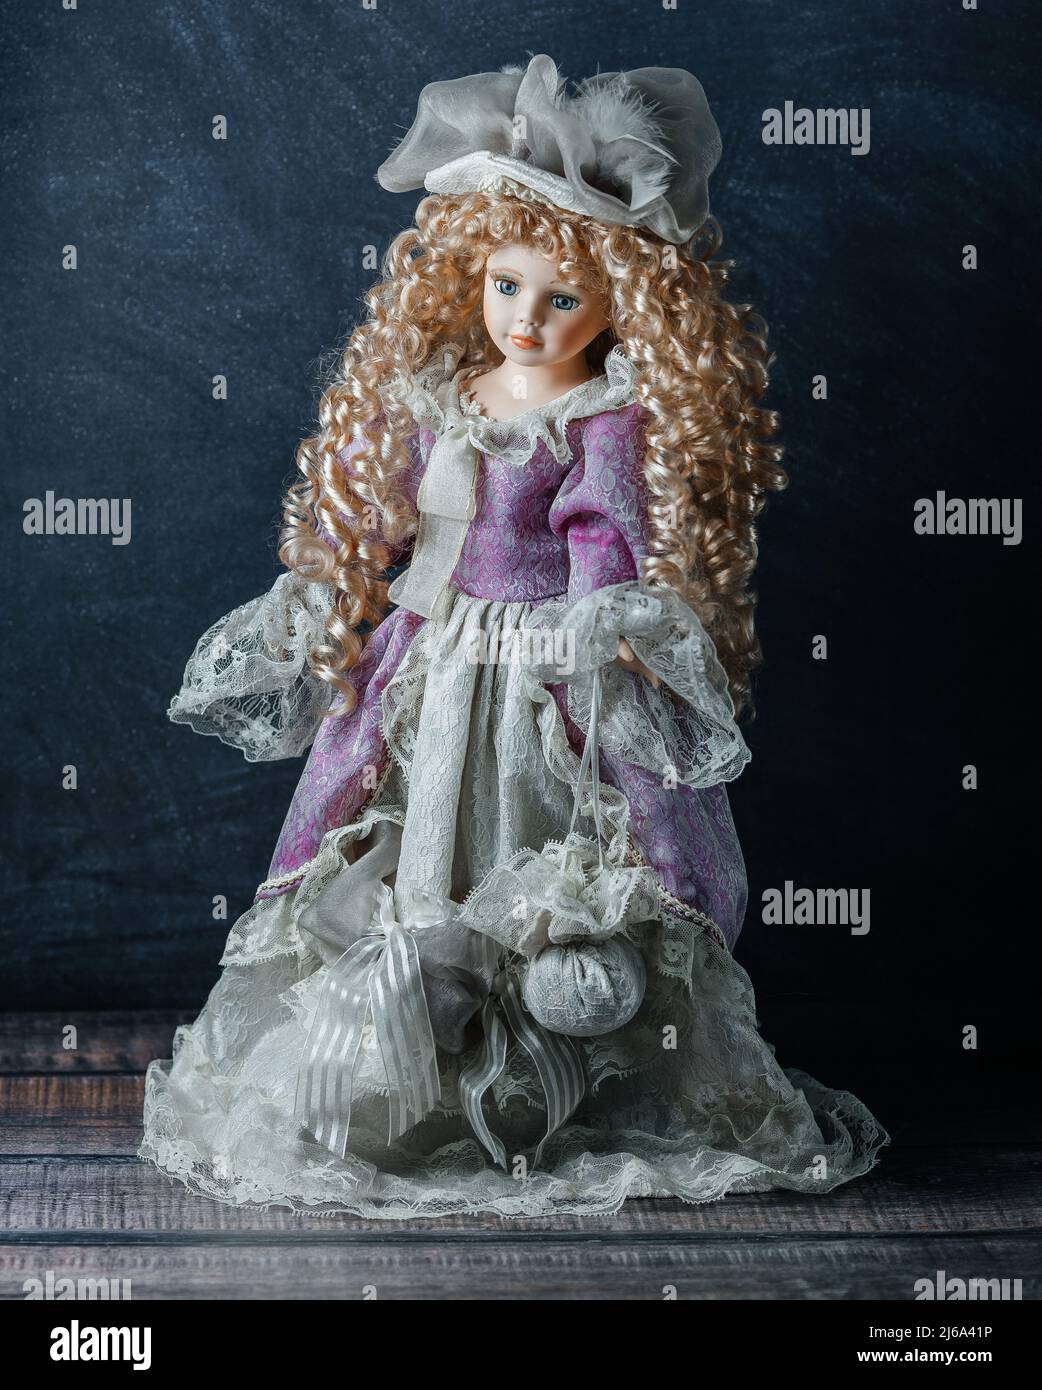 Incroyable réaliste vintage jouet avec les yeux bleus.la poupée habillée dans une robe rose et a un cheveux blond. Mise au point sélective. Poupée en porcelaine Banque D'Images